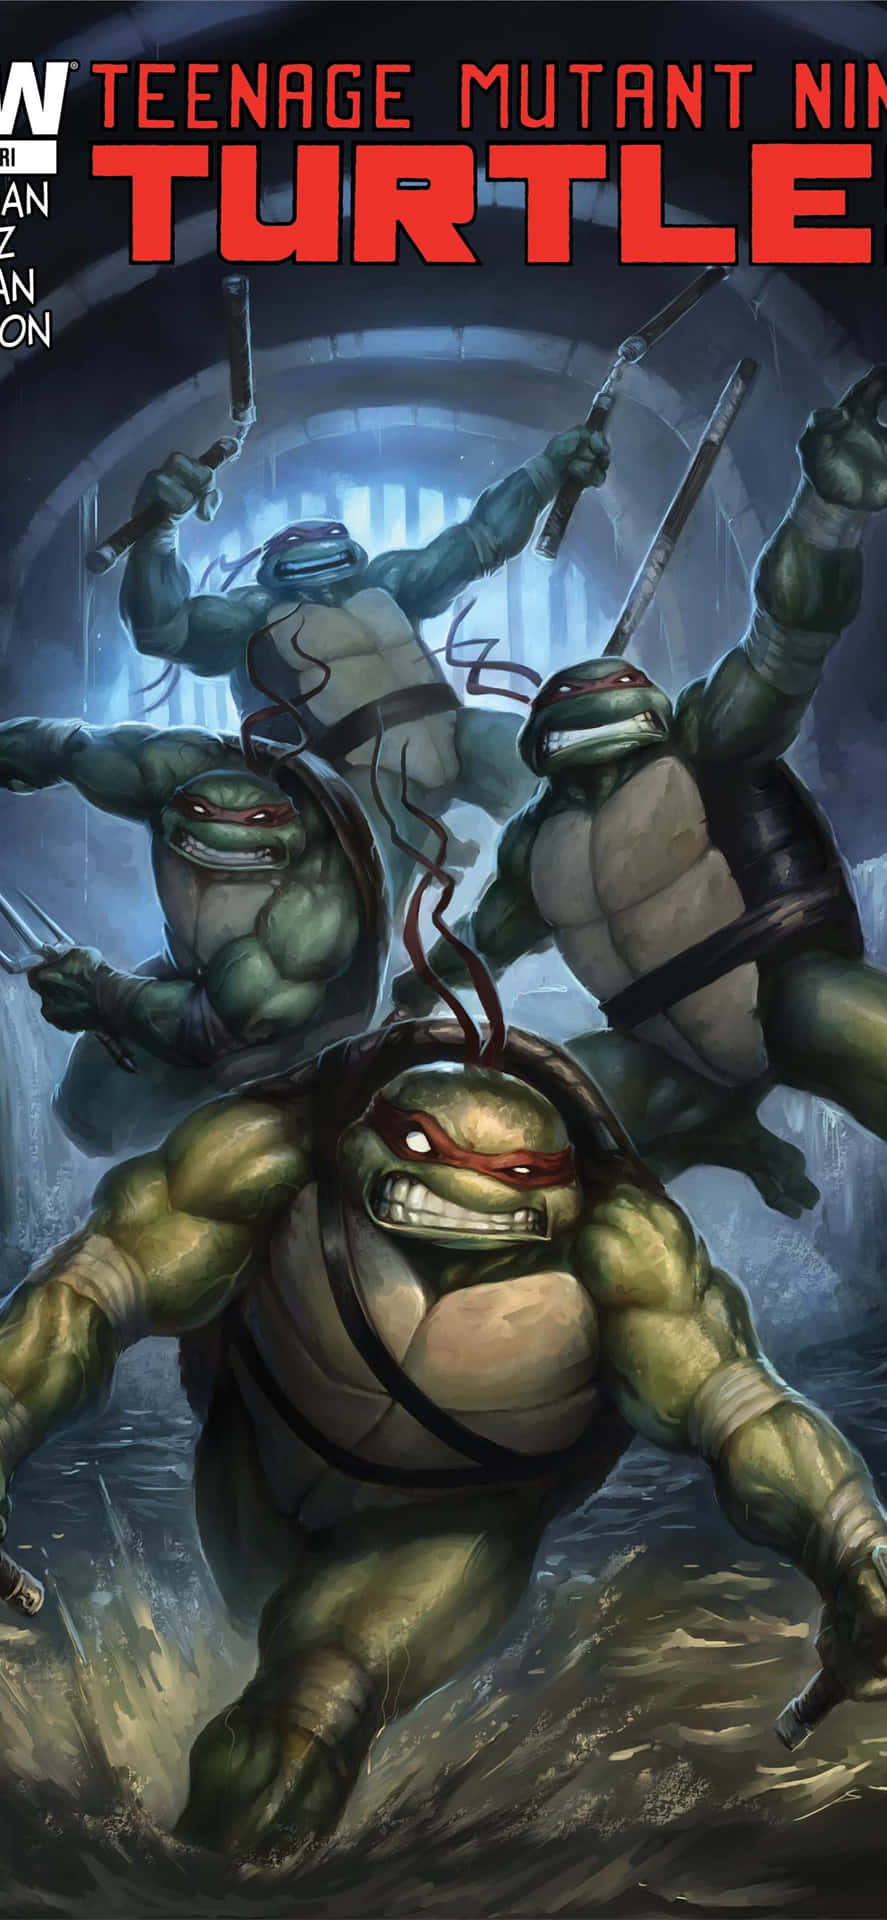 Teenage Mutant Ninja Turtles Comic Book With Raging Heroes Wallpaper